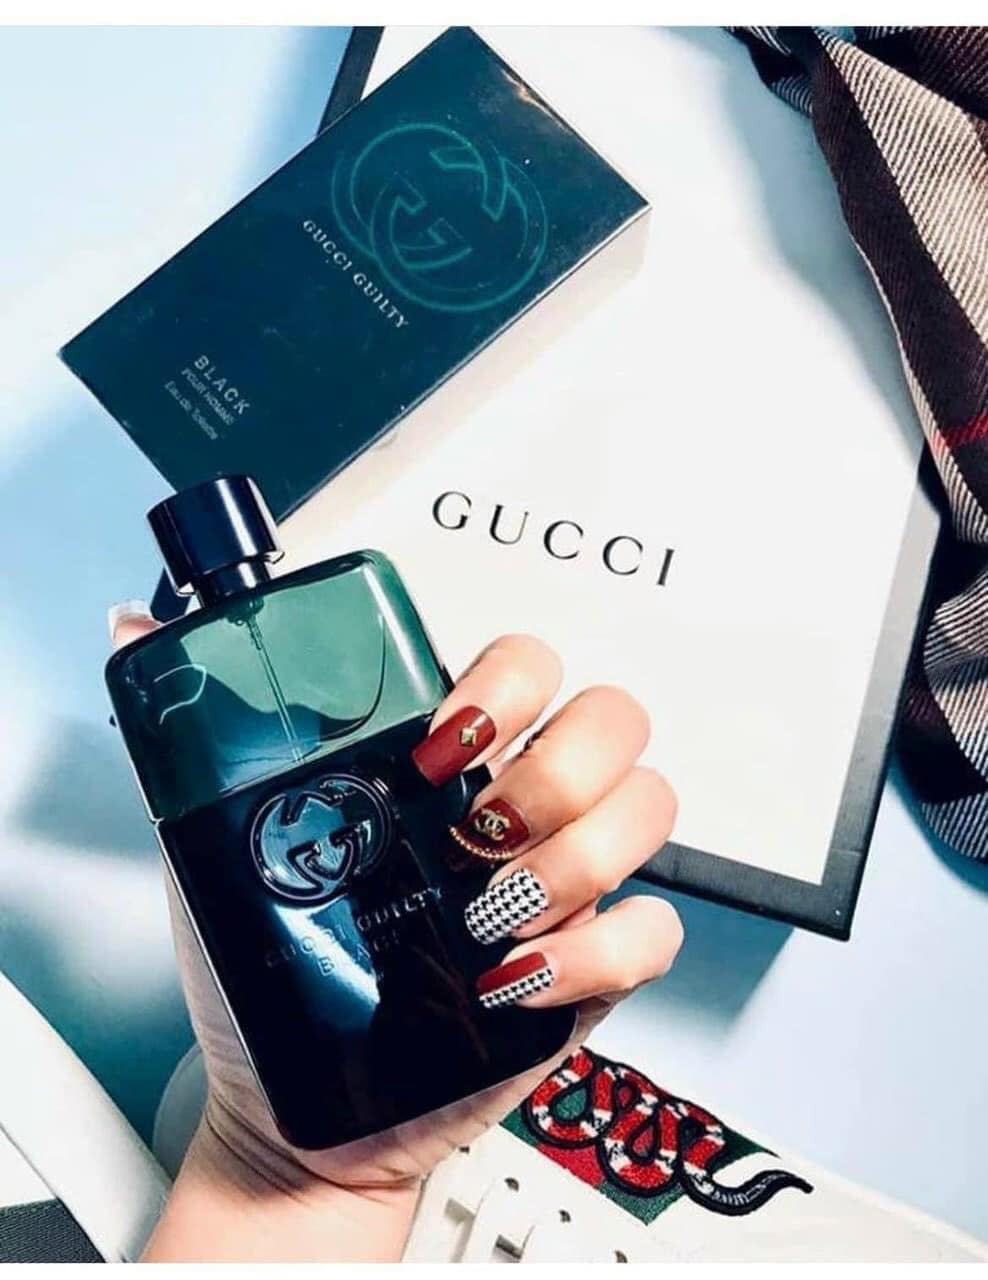 Gucci Guilty Black Pour Homme 2 - Nuochoarosa.com - Nước hoa cao cấp, chính hãng giá tốt, mẫu mới